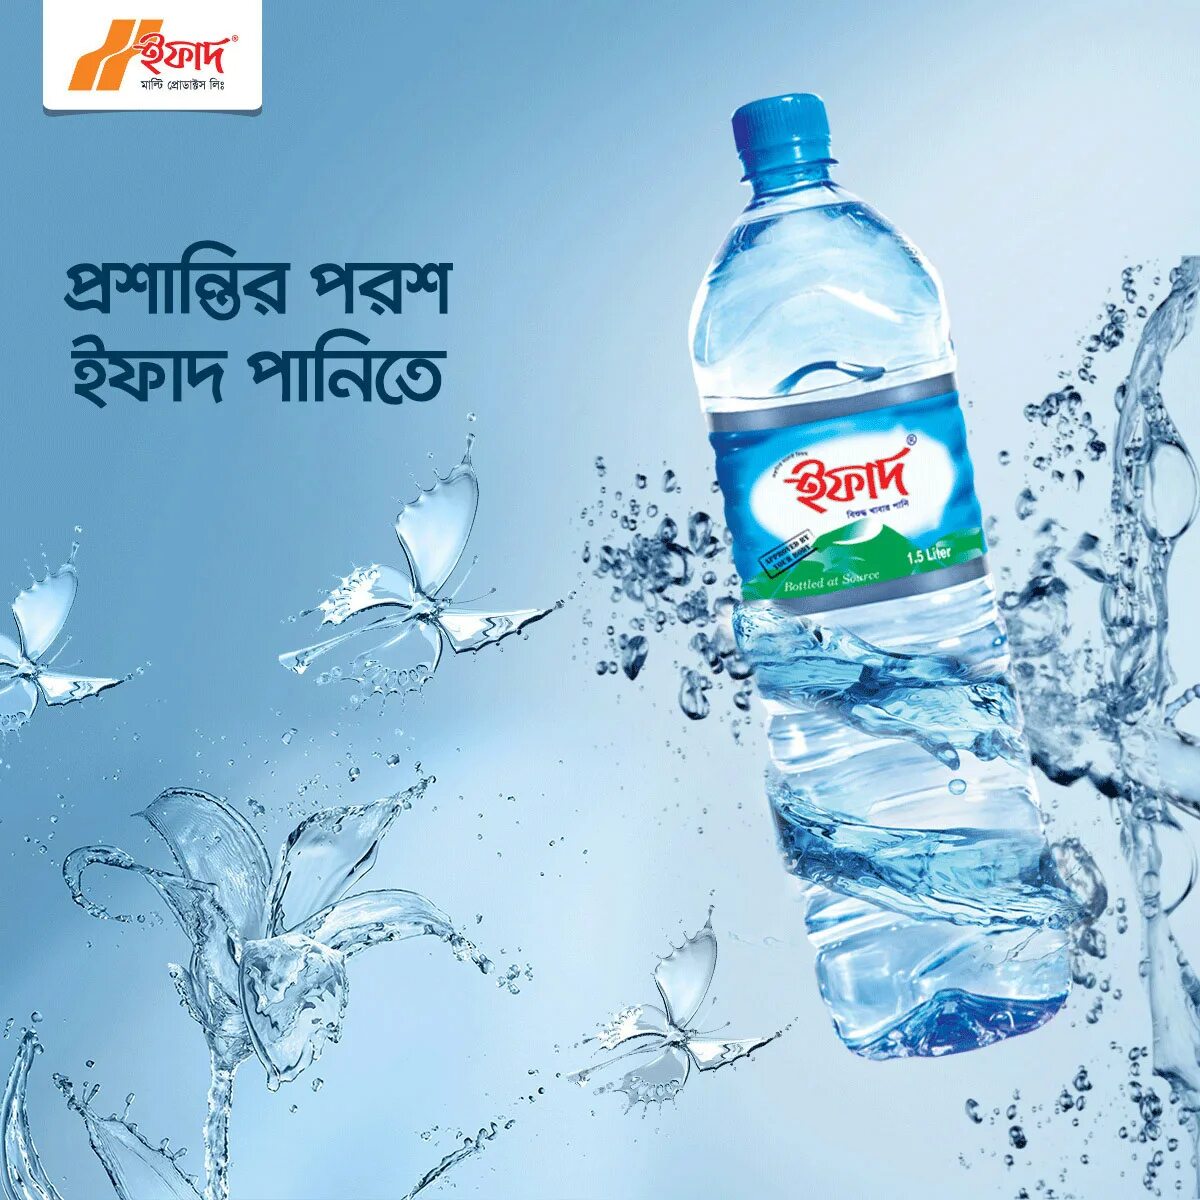 Питьевая вода дали. Реклама воды. Реклама питьевой воды. Реклама воды в бутылке. Бутилированная вода реклама.